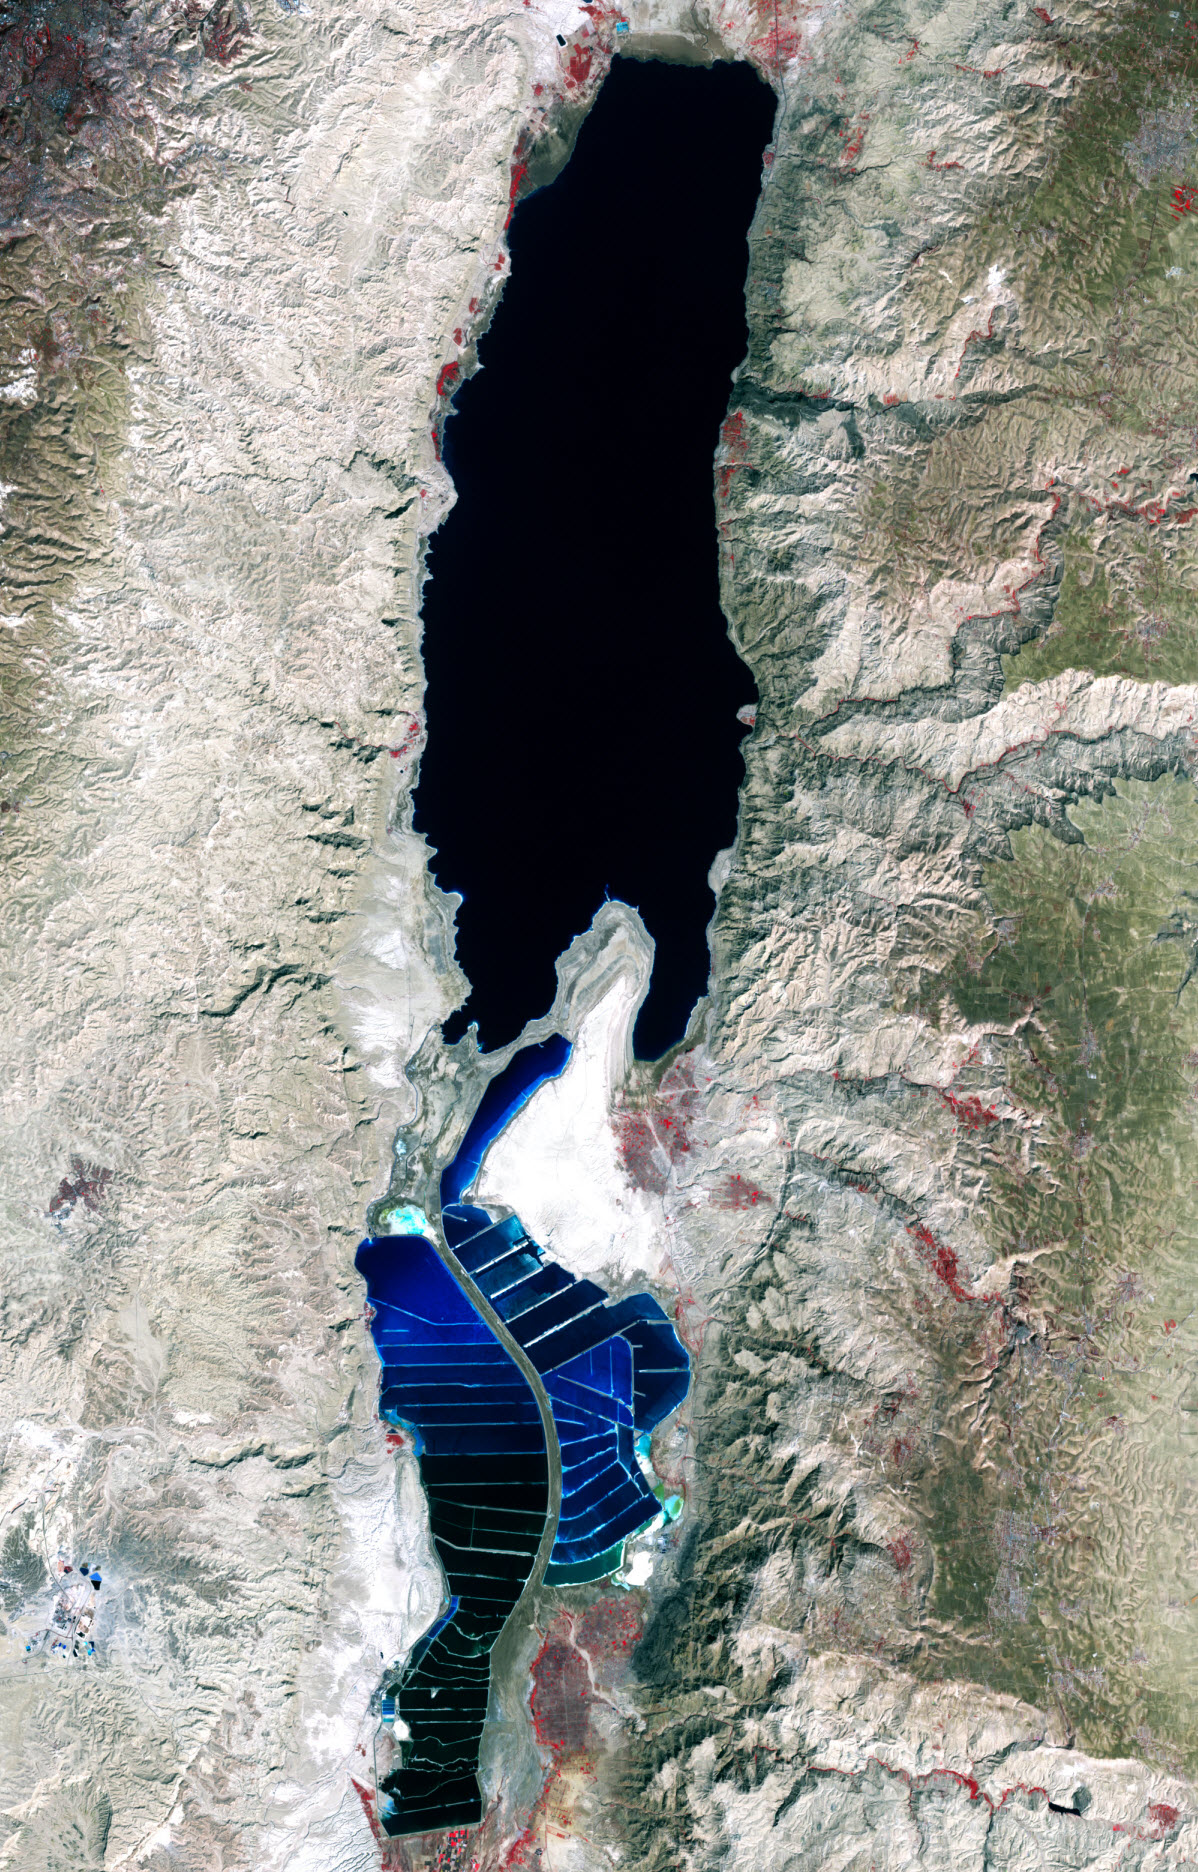 Мертвое море озеро